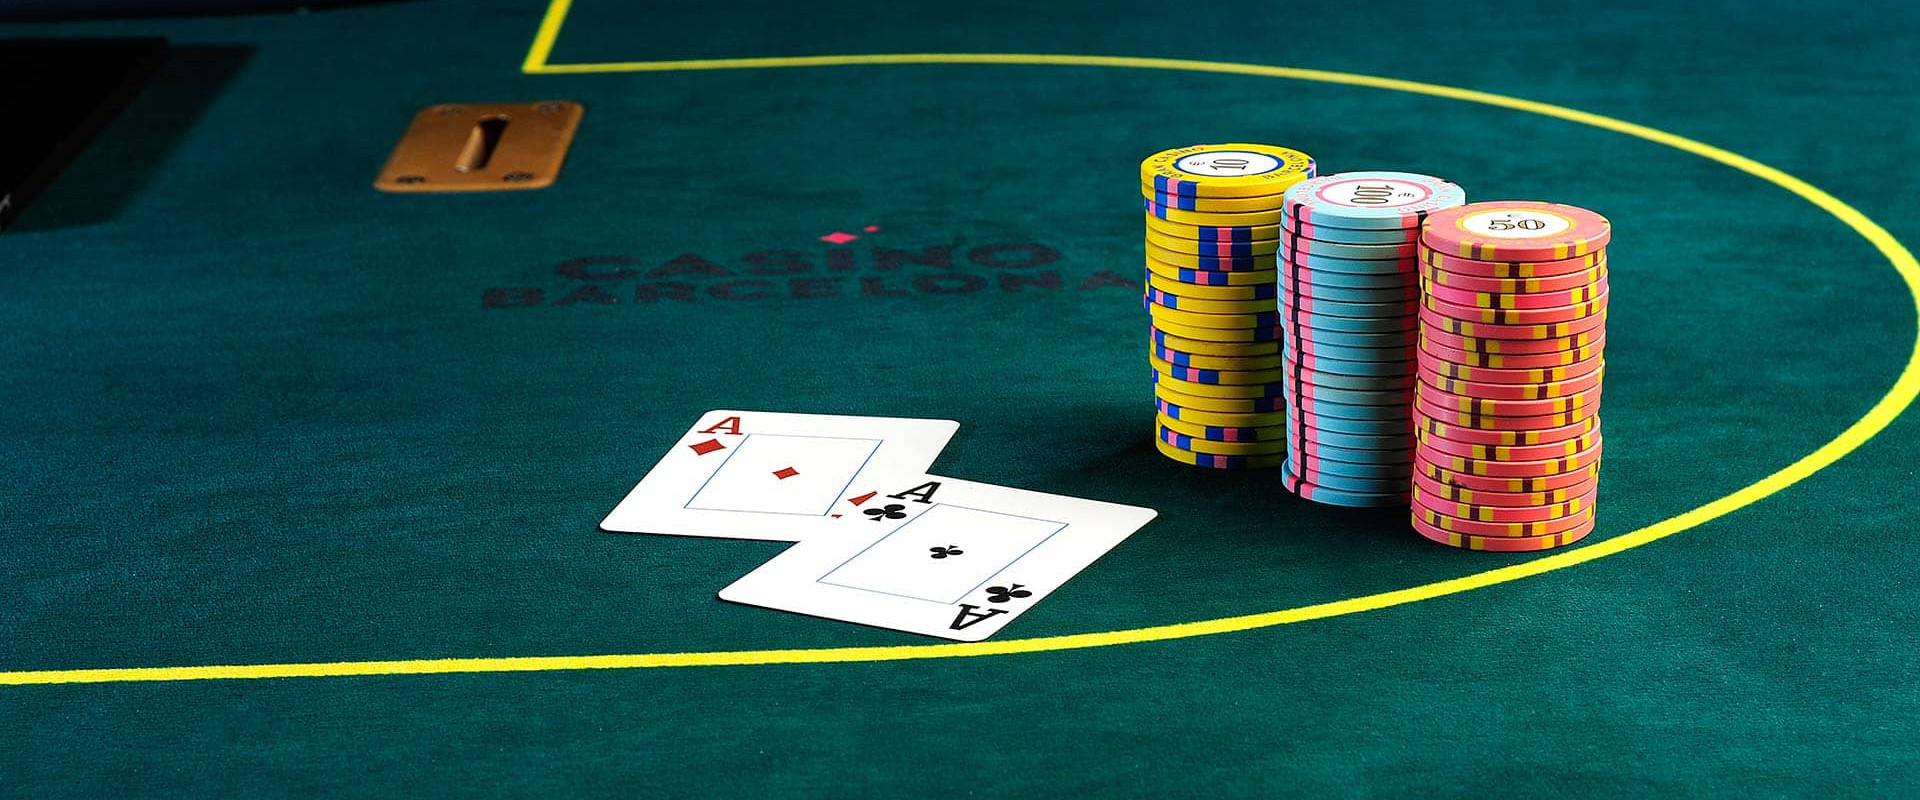 Permainan Poker Online Judi Terakbar Hadirkan Banyak Jenis Permainan